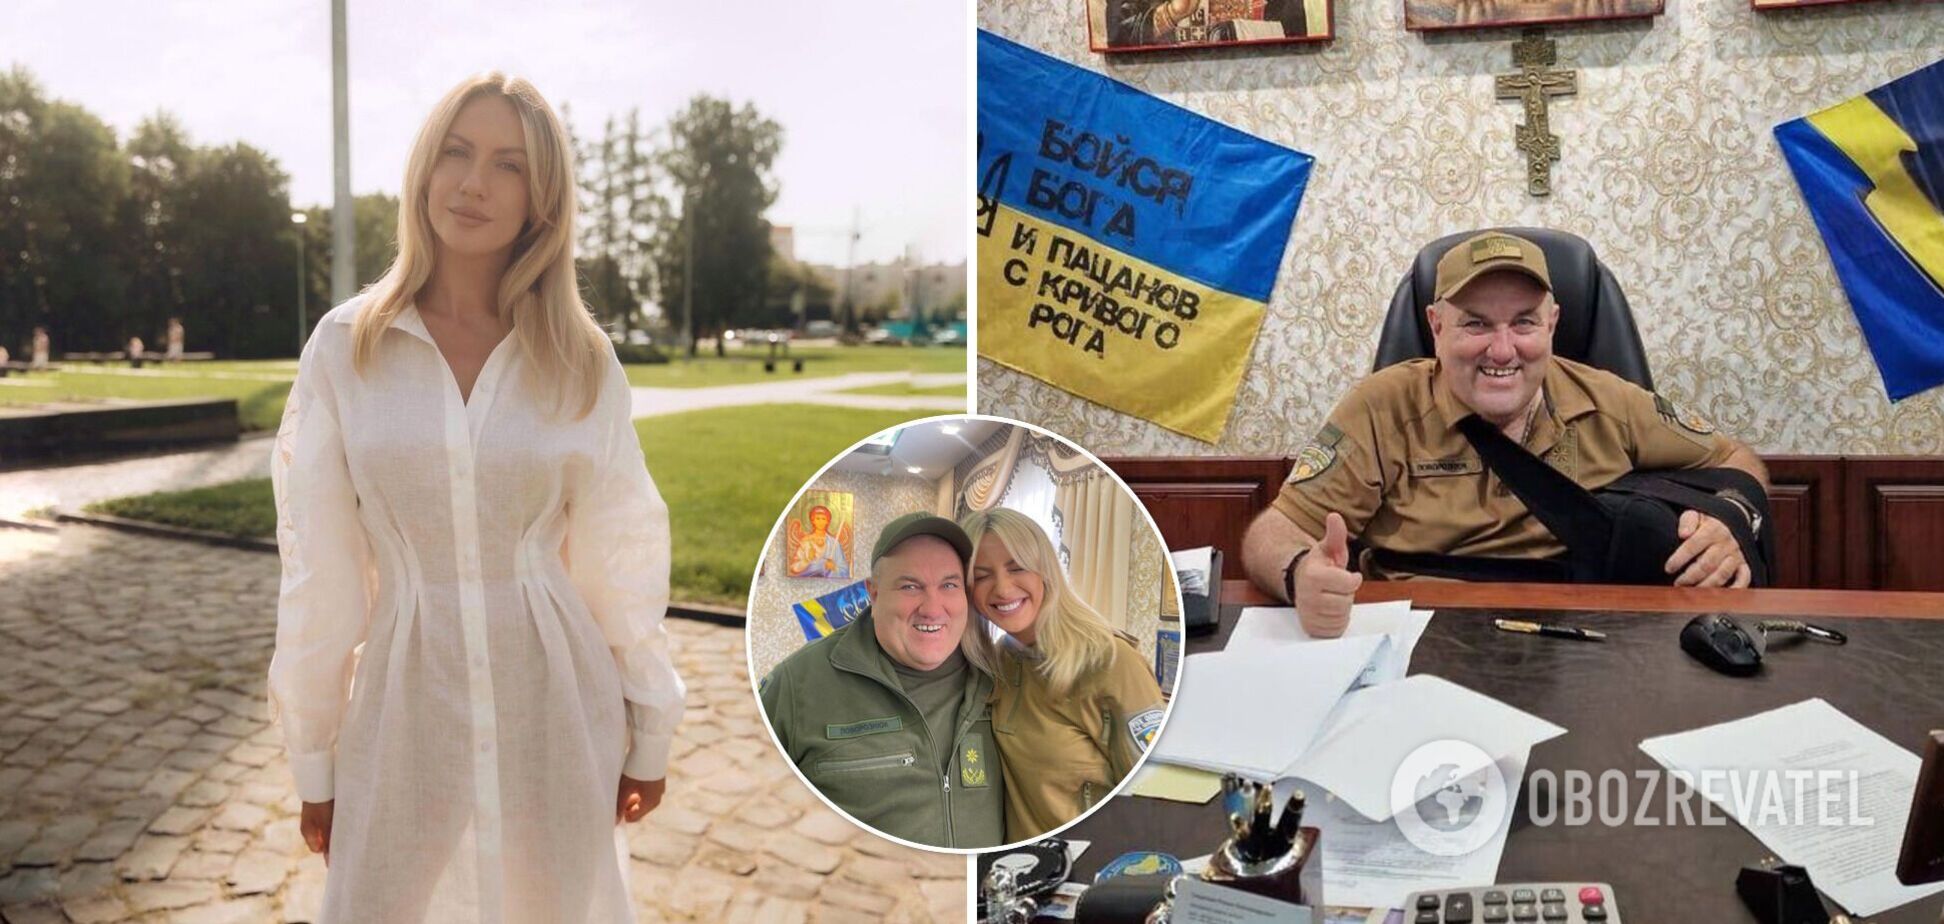 Леся Никитюк взорвала сеть фото с автором мема 'Вова, **** їх!': у россиян истерика